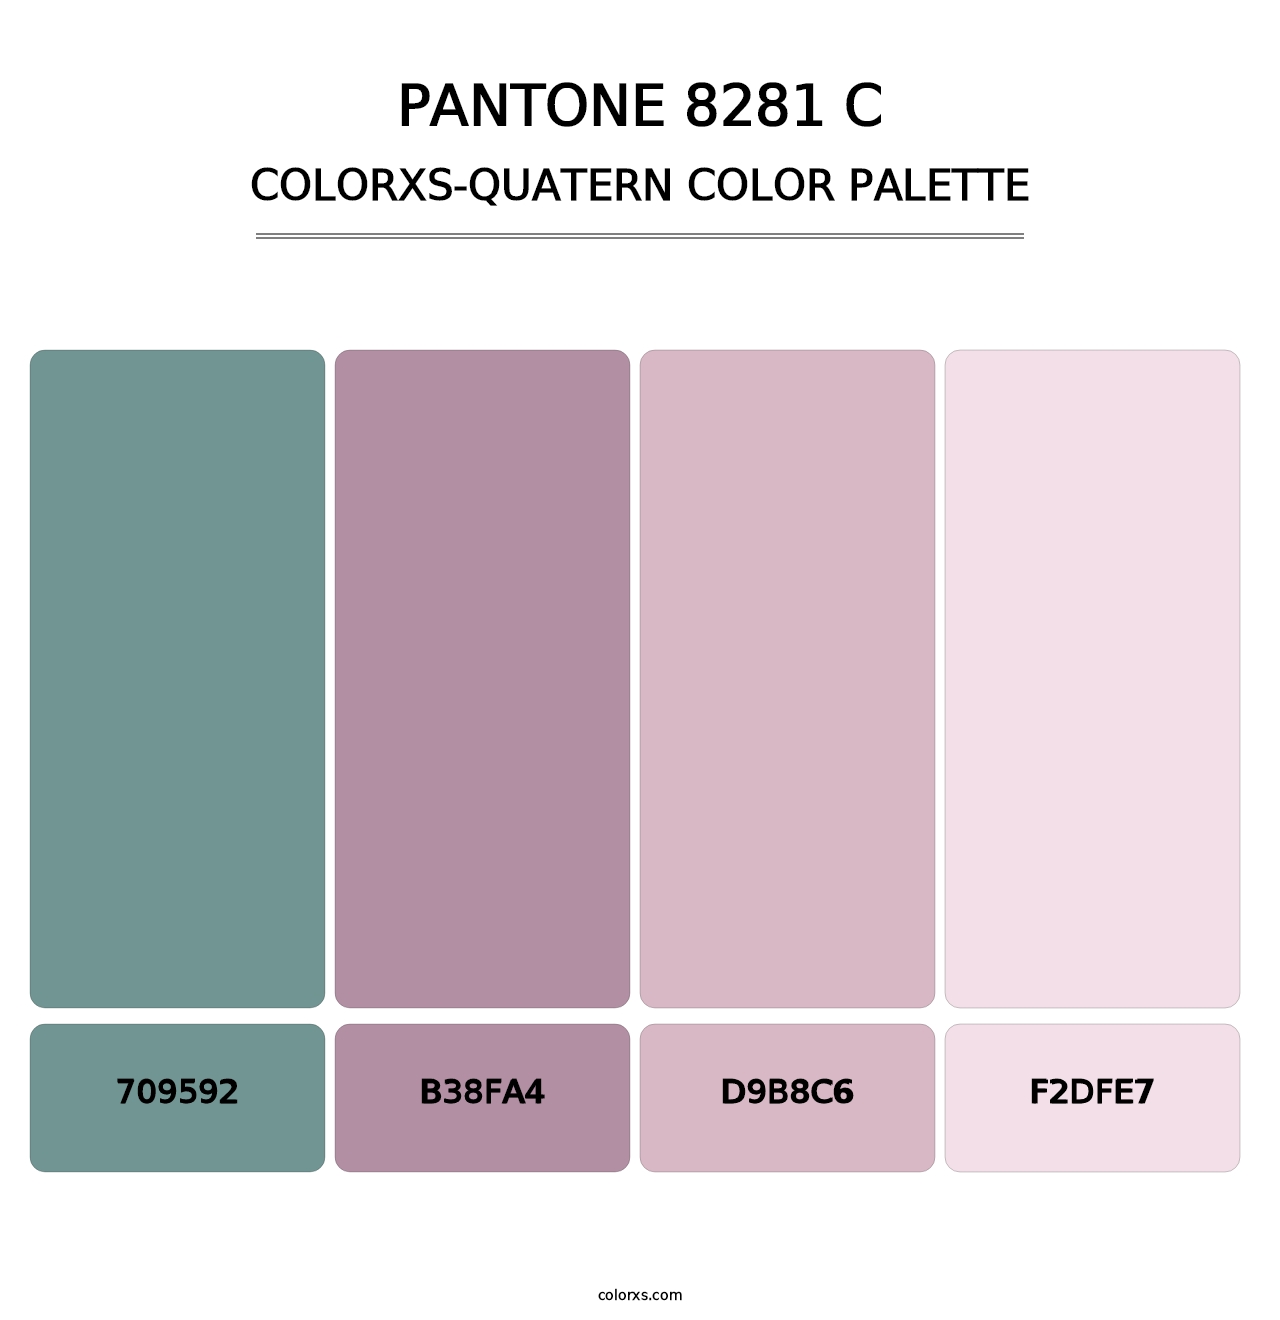 PANTONE 8281 C - Colorxs Quatern Palette